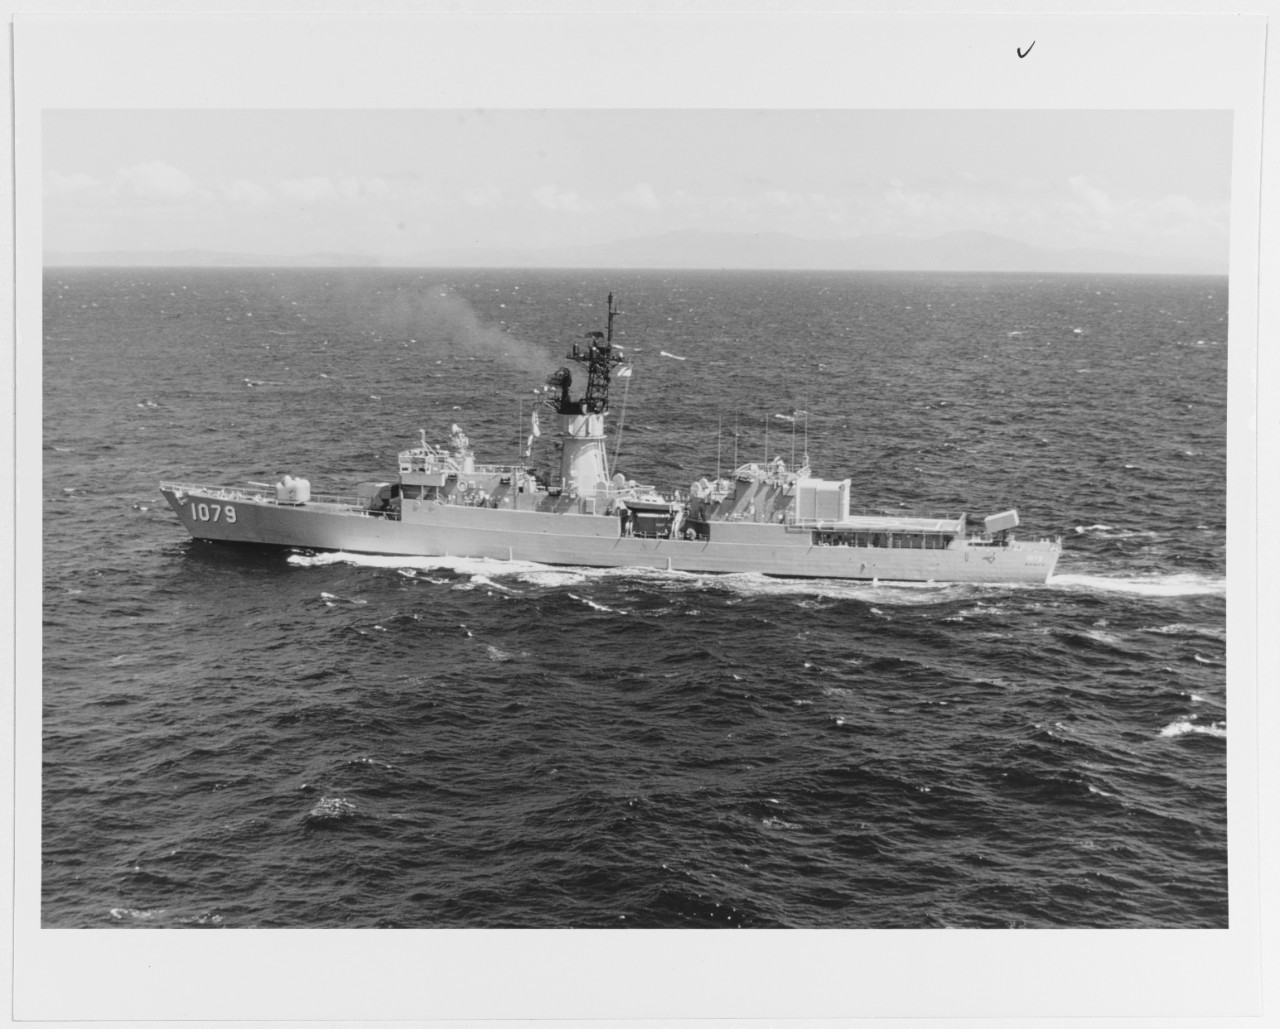 USS BOWEN (DE-1079)